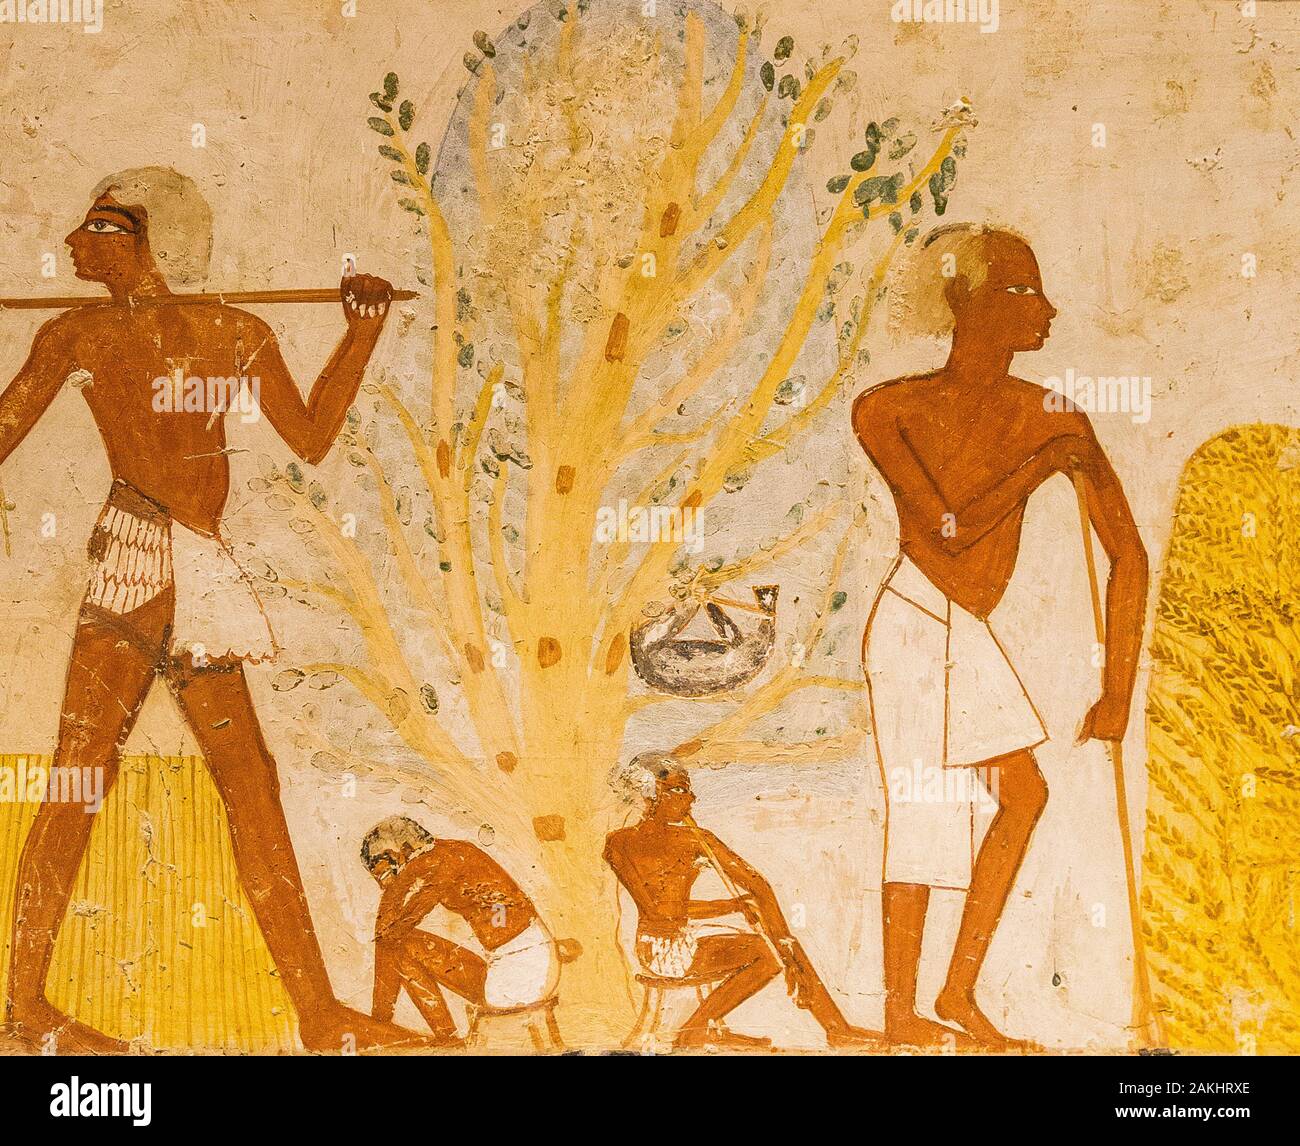 Luxor en Egypte, Vallée des Nobles, tombe de Menna. Scène agricole, un arbre où un gourde est suspendu, une pipette et un couchette. Banque D'Images